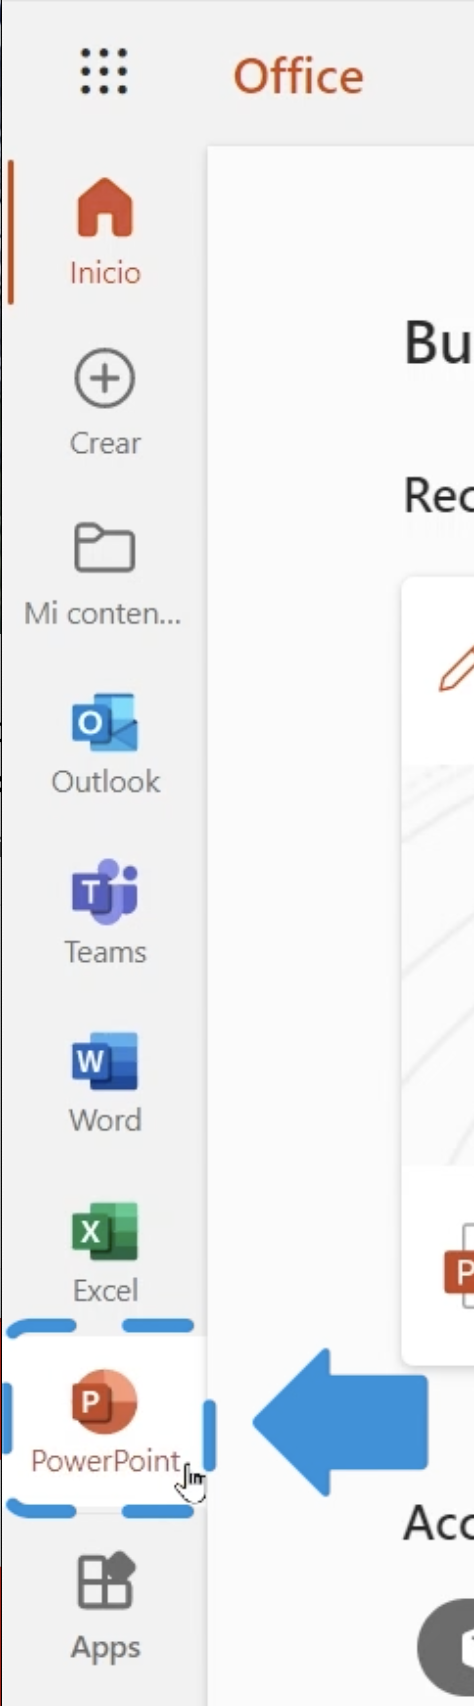 PowerPoint en Office 365, Office 365